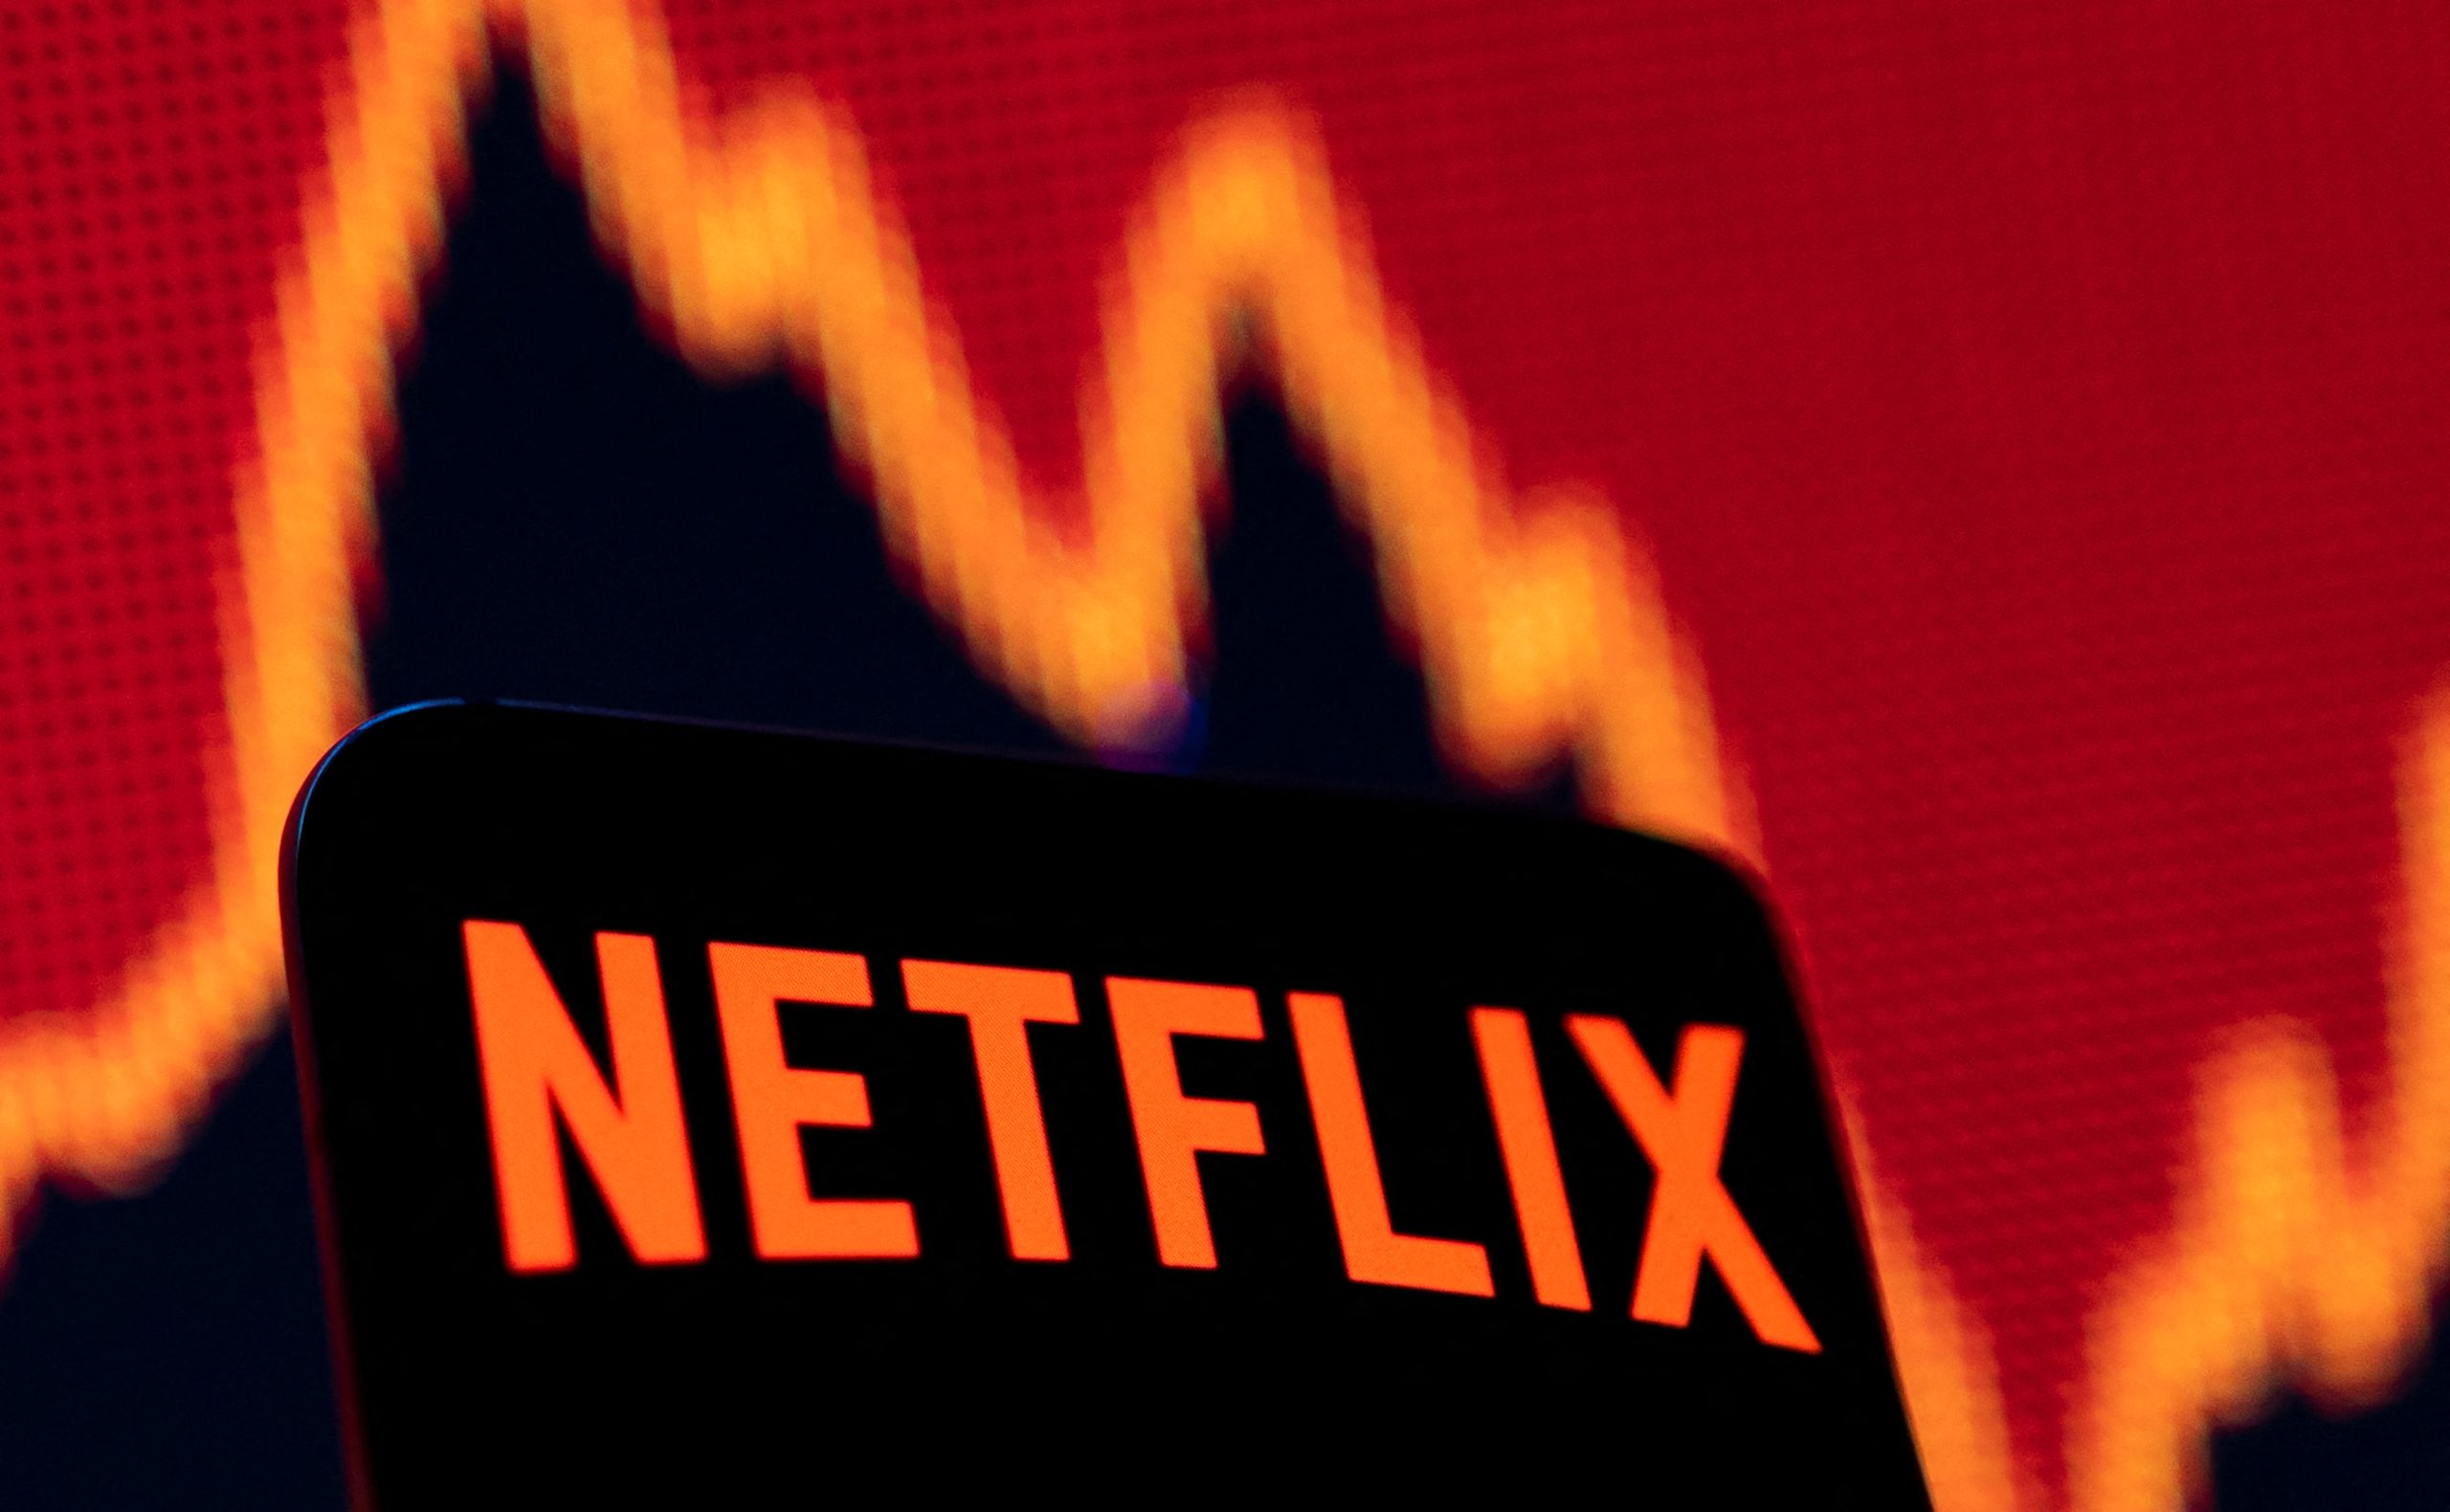 Netflix sa thải 150 nhân viên chủ yếu là người Mỹ